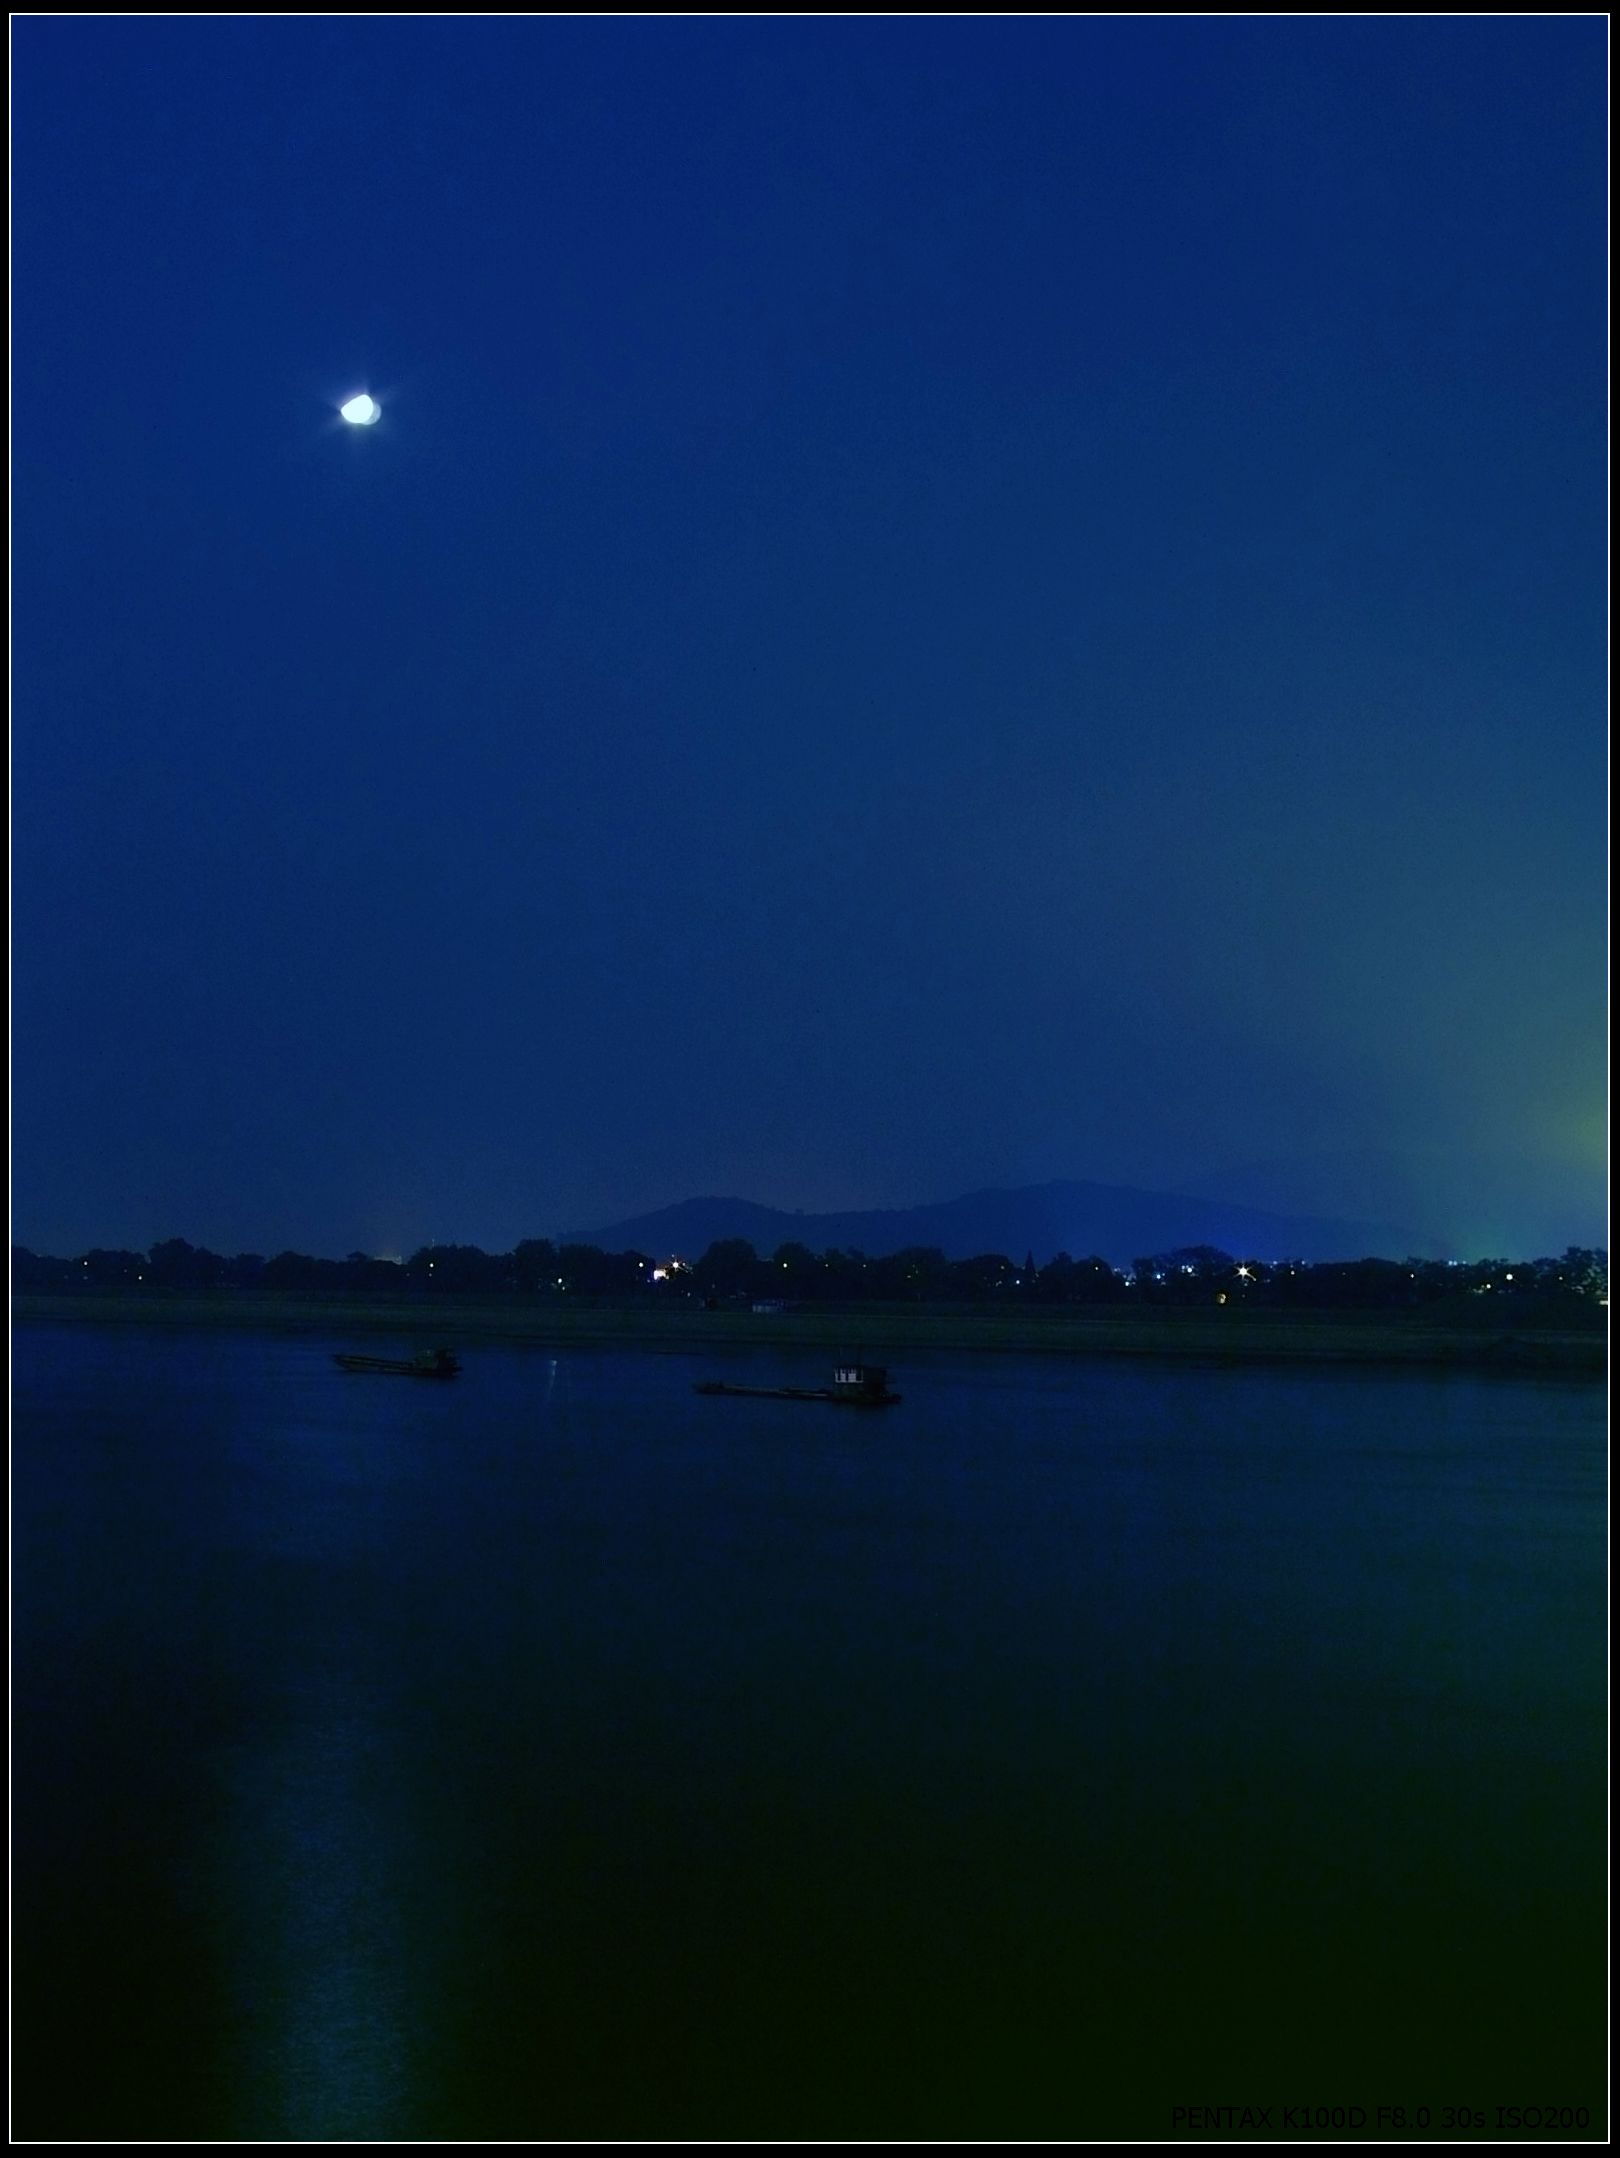 明月素材摄影夜晚湖水平静像镜面一样倒映着天边的明月和岸边的树木